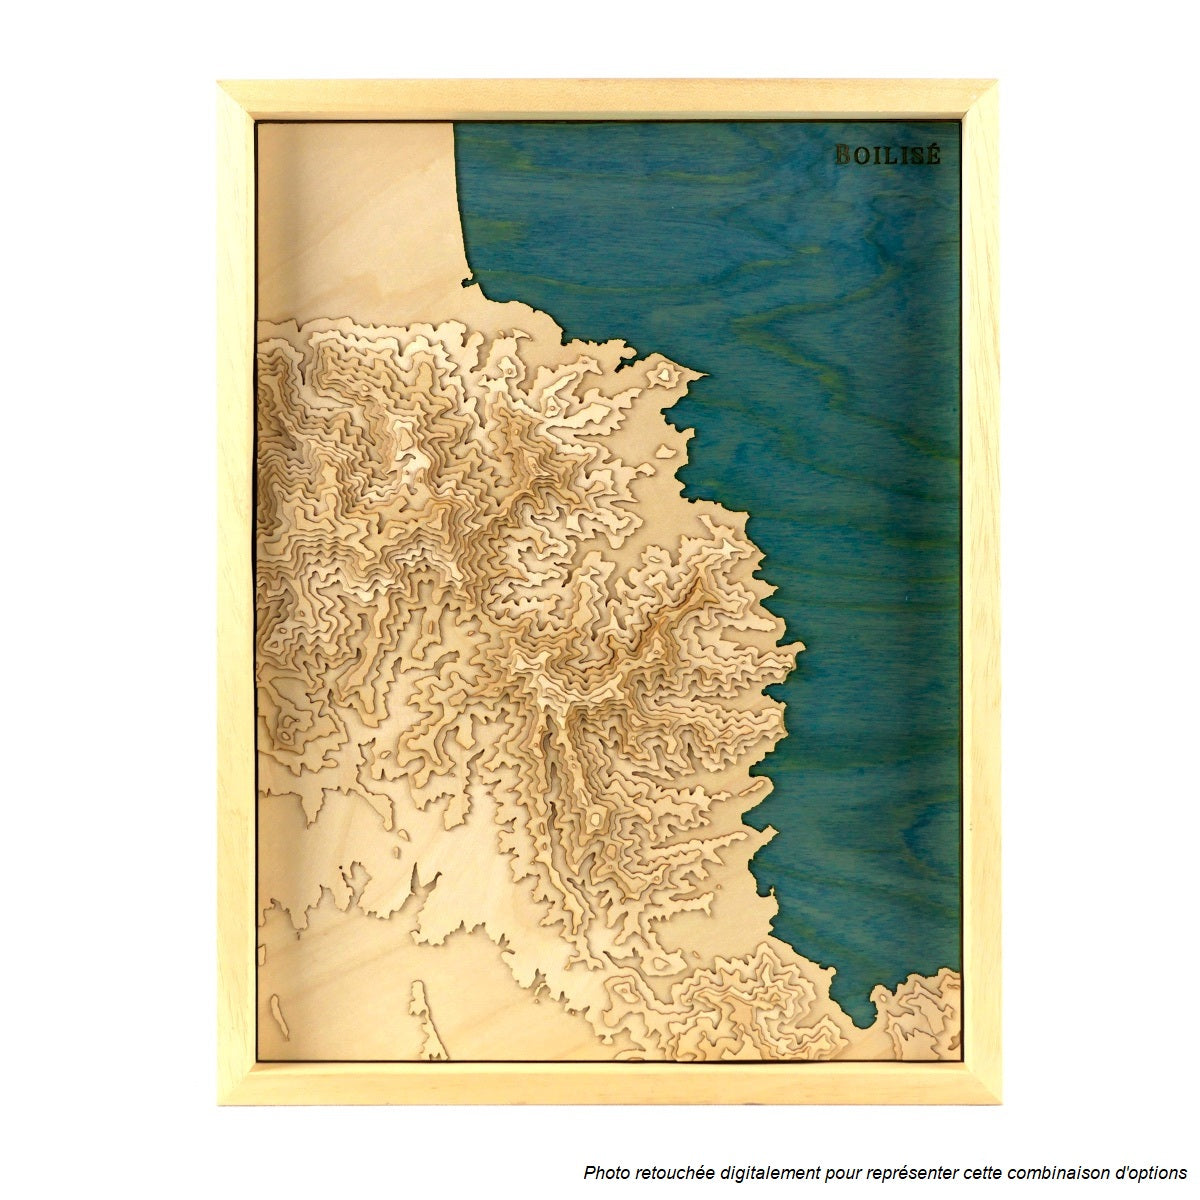 Carte de la côte vermeille en relief et en bois dans un cadre brut avec la méditérannée en bleu marine